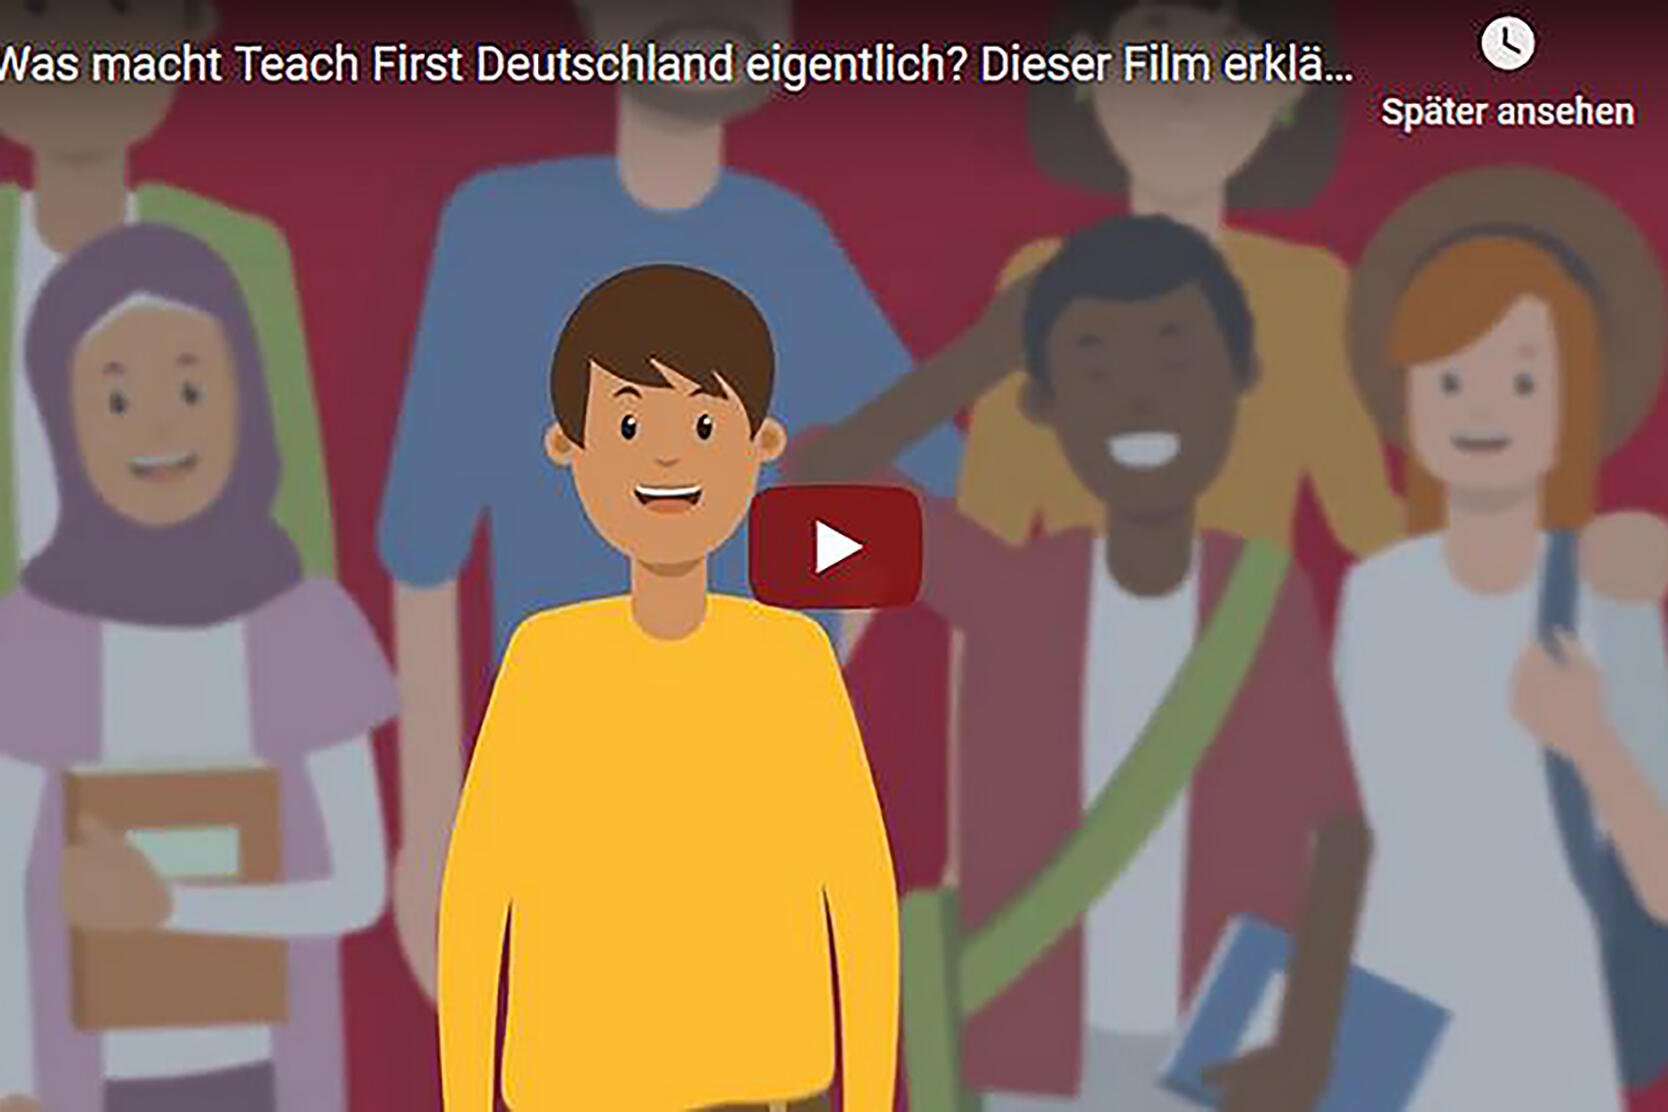 Erster Ausschnitt des Videos von Teach First: Grafische Abbildung von mehreren Jugendlichen unterschiedlicher Nationalitäten.